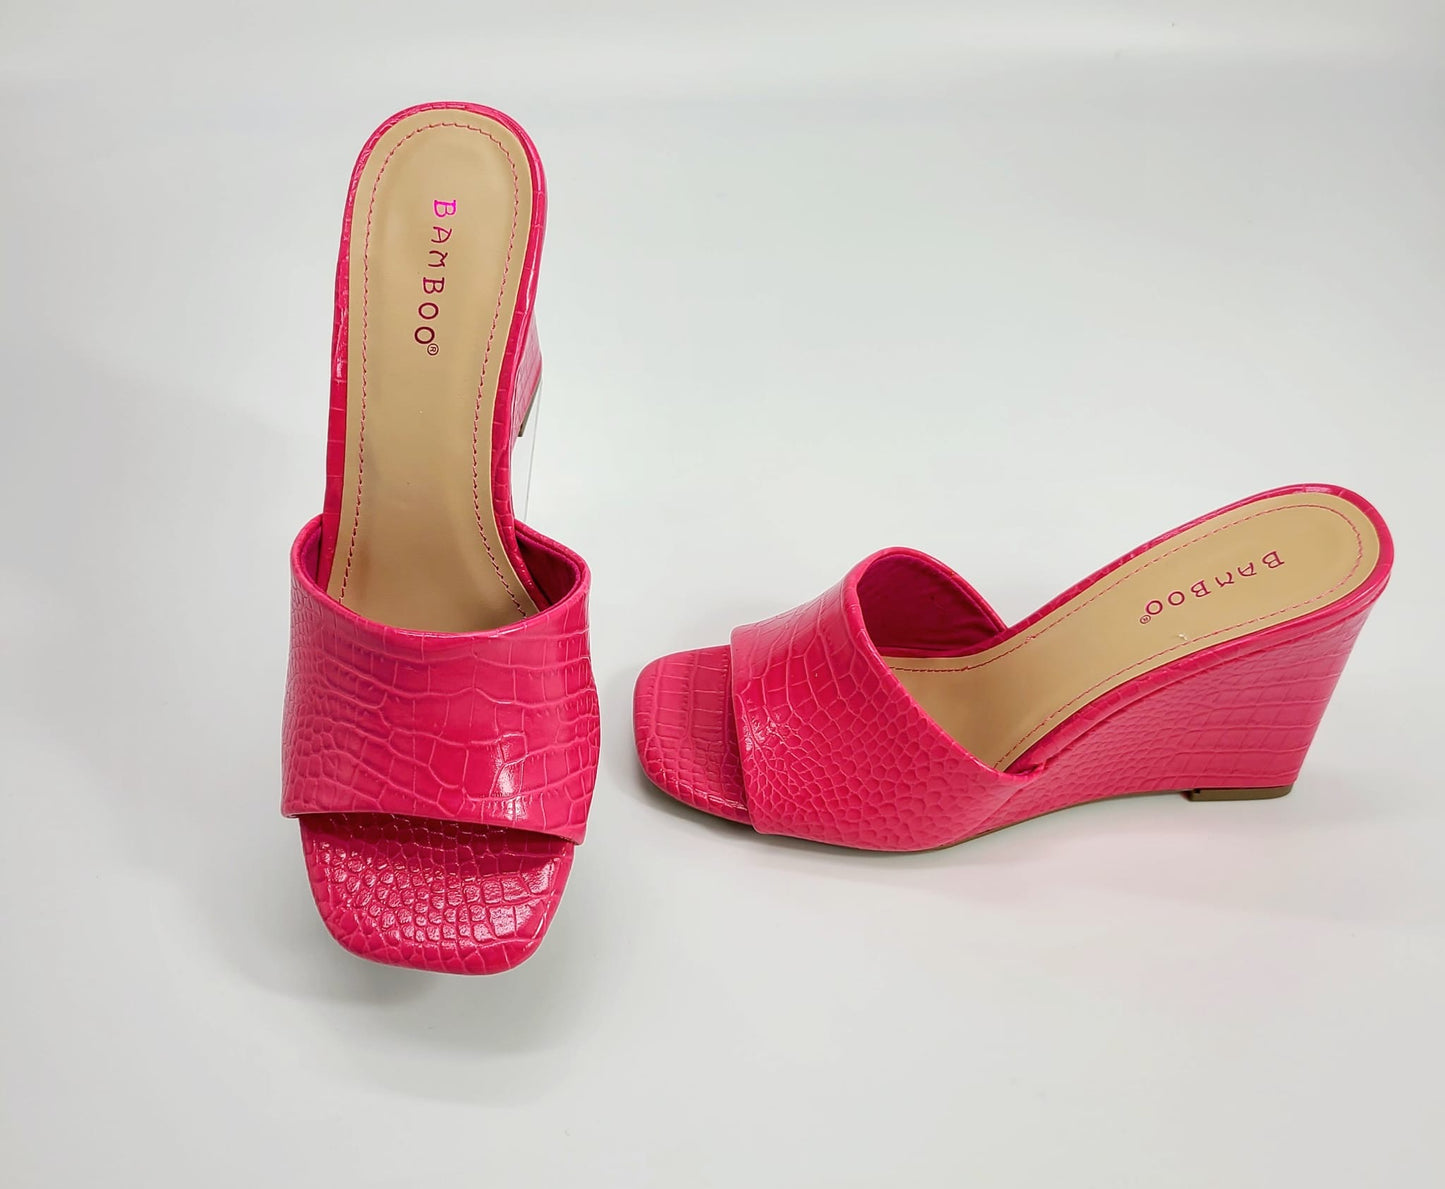 Dolce Vita Platform Heels Slide Sandals (Hot Pink)